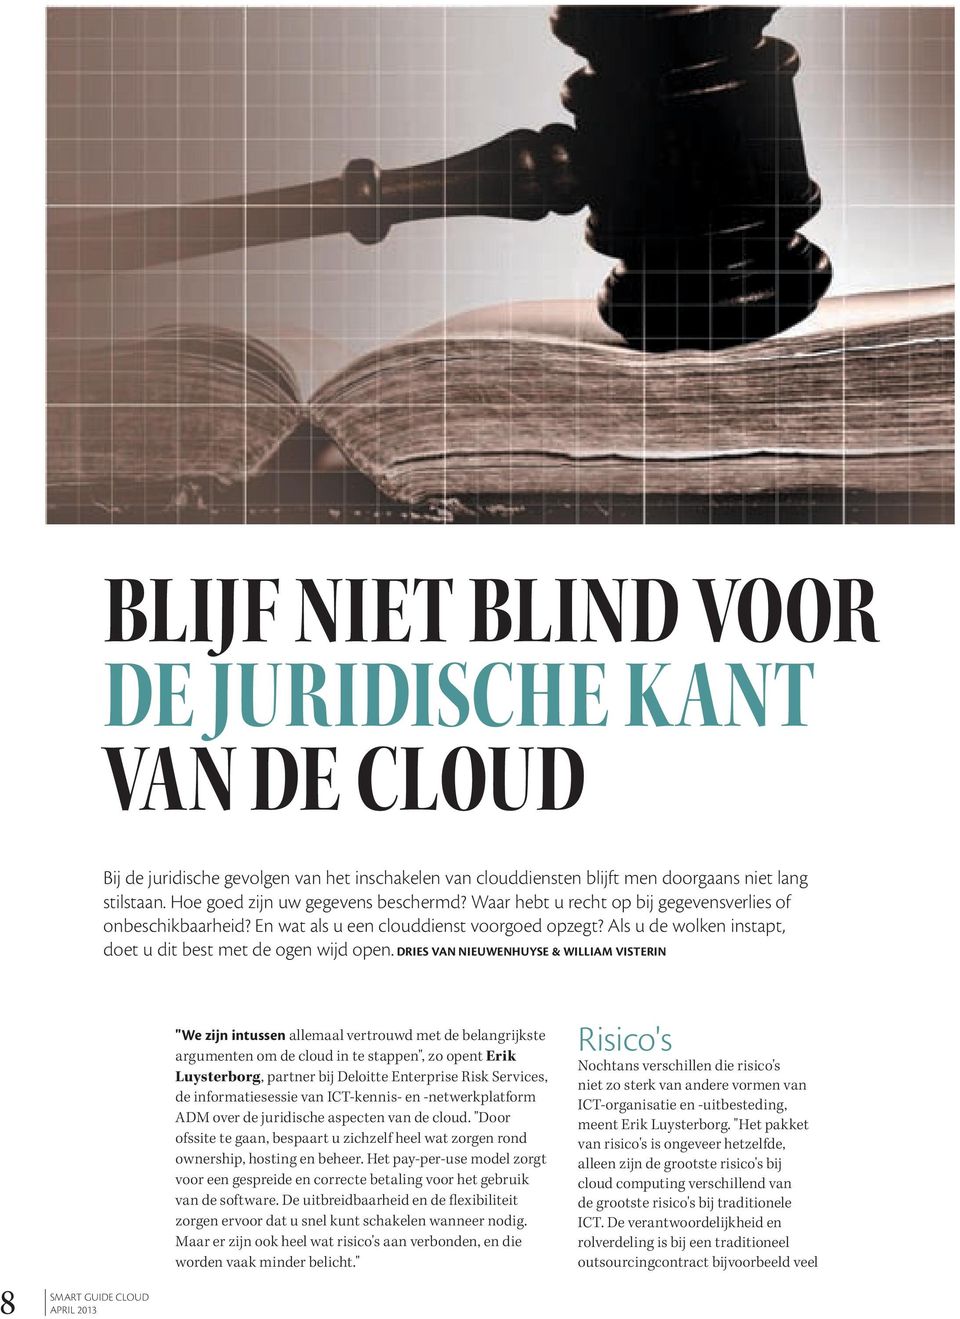 Dries Van nieuwenhuyse & william Visterin "we zijn intussen allemaal vertrouwd met de belangrijkste argumenten om de cloud in te stappen", zo opent Erik Luysterborg, partner bij Deloitte Enterprise